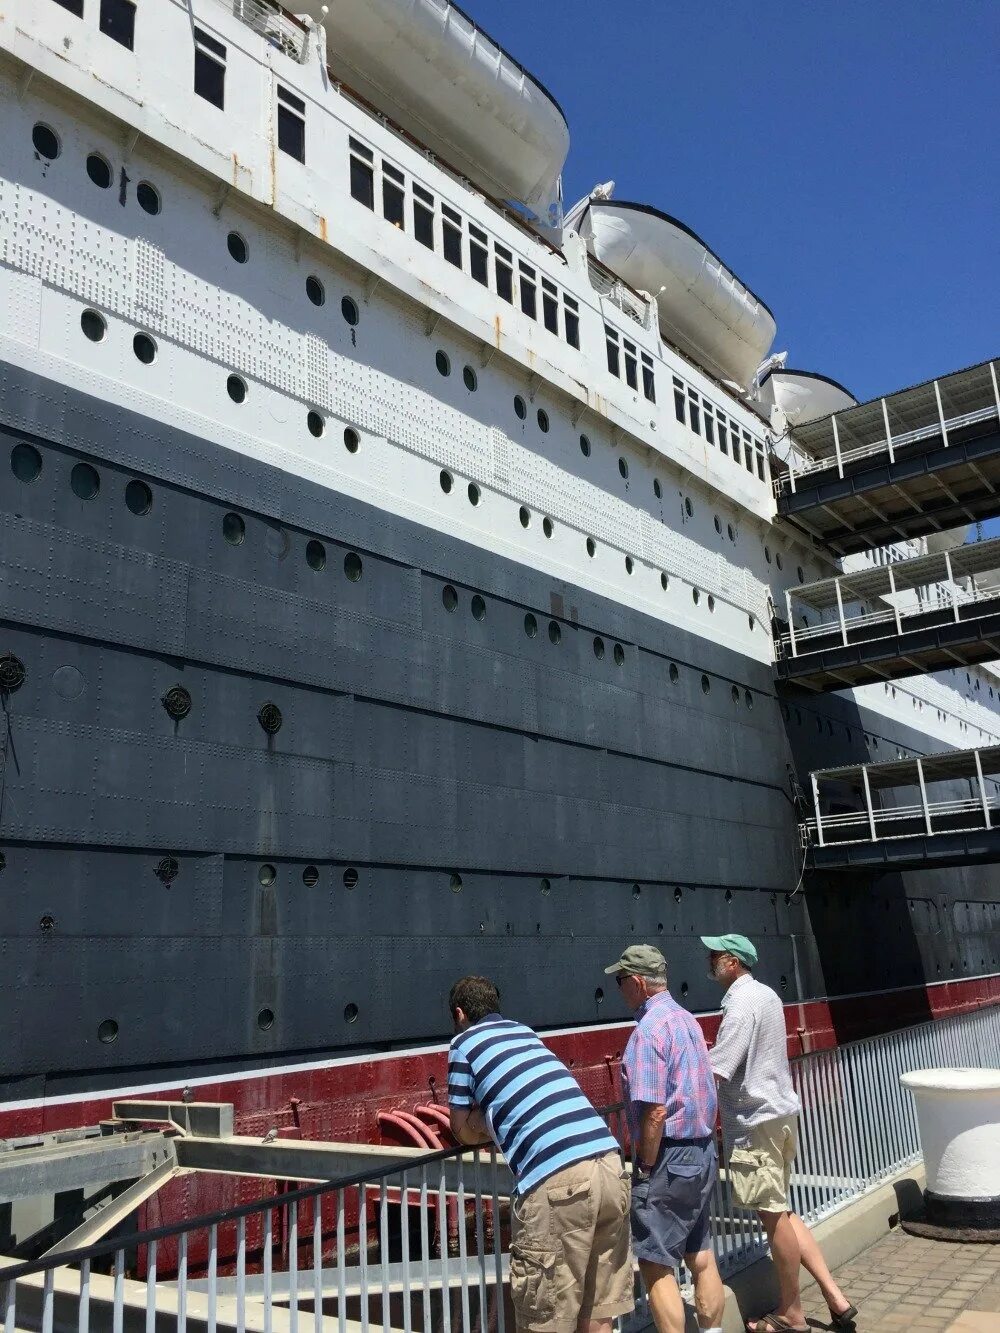 Queen Mary ship.